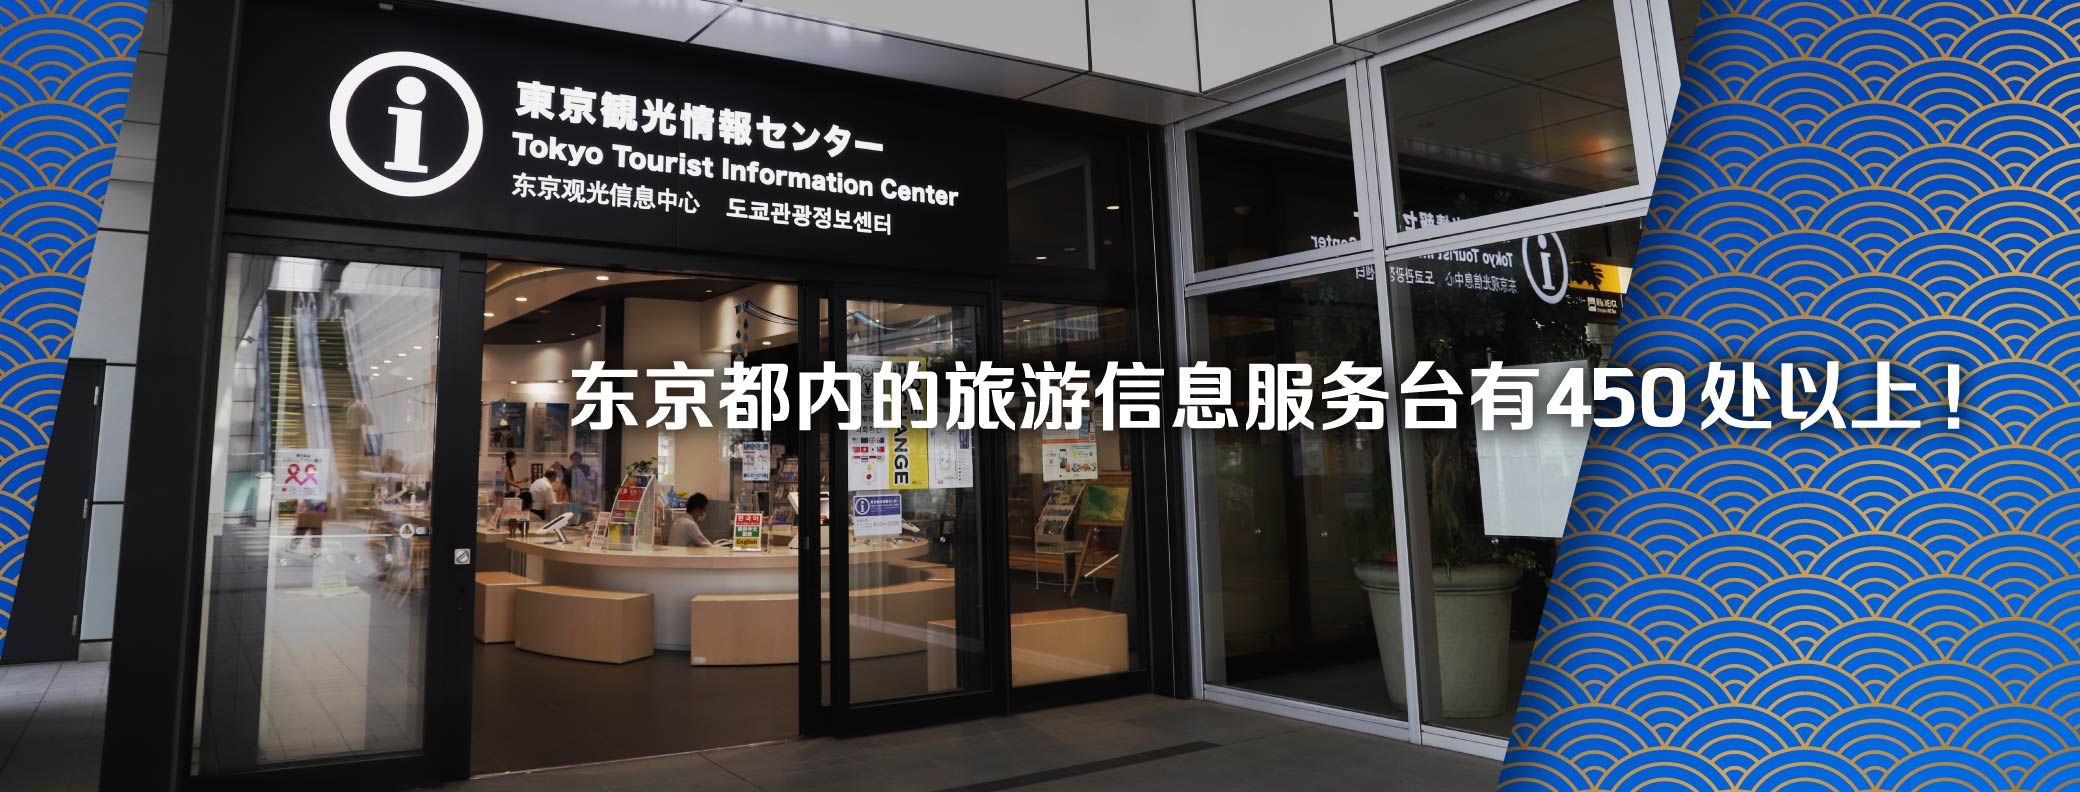 东京都内的旅游信息服务台有470处以上